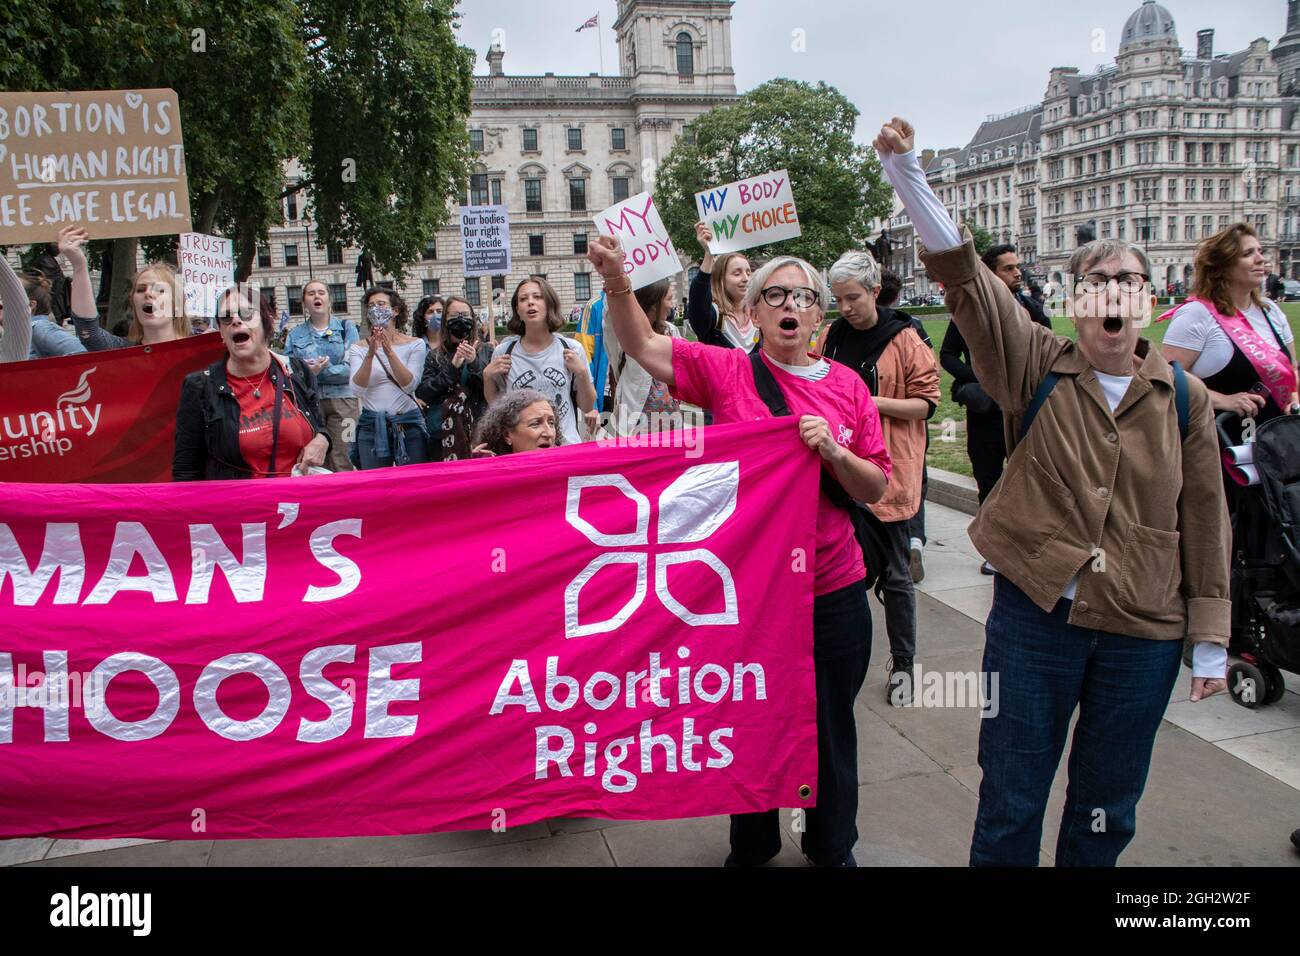 March for Life UK’ Anti-abtreibungsdemonstrationsmarsch organisiert von Pro-Life-christlichen Gruppen / London - 04. September 2021 Stockfoto